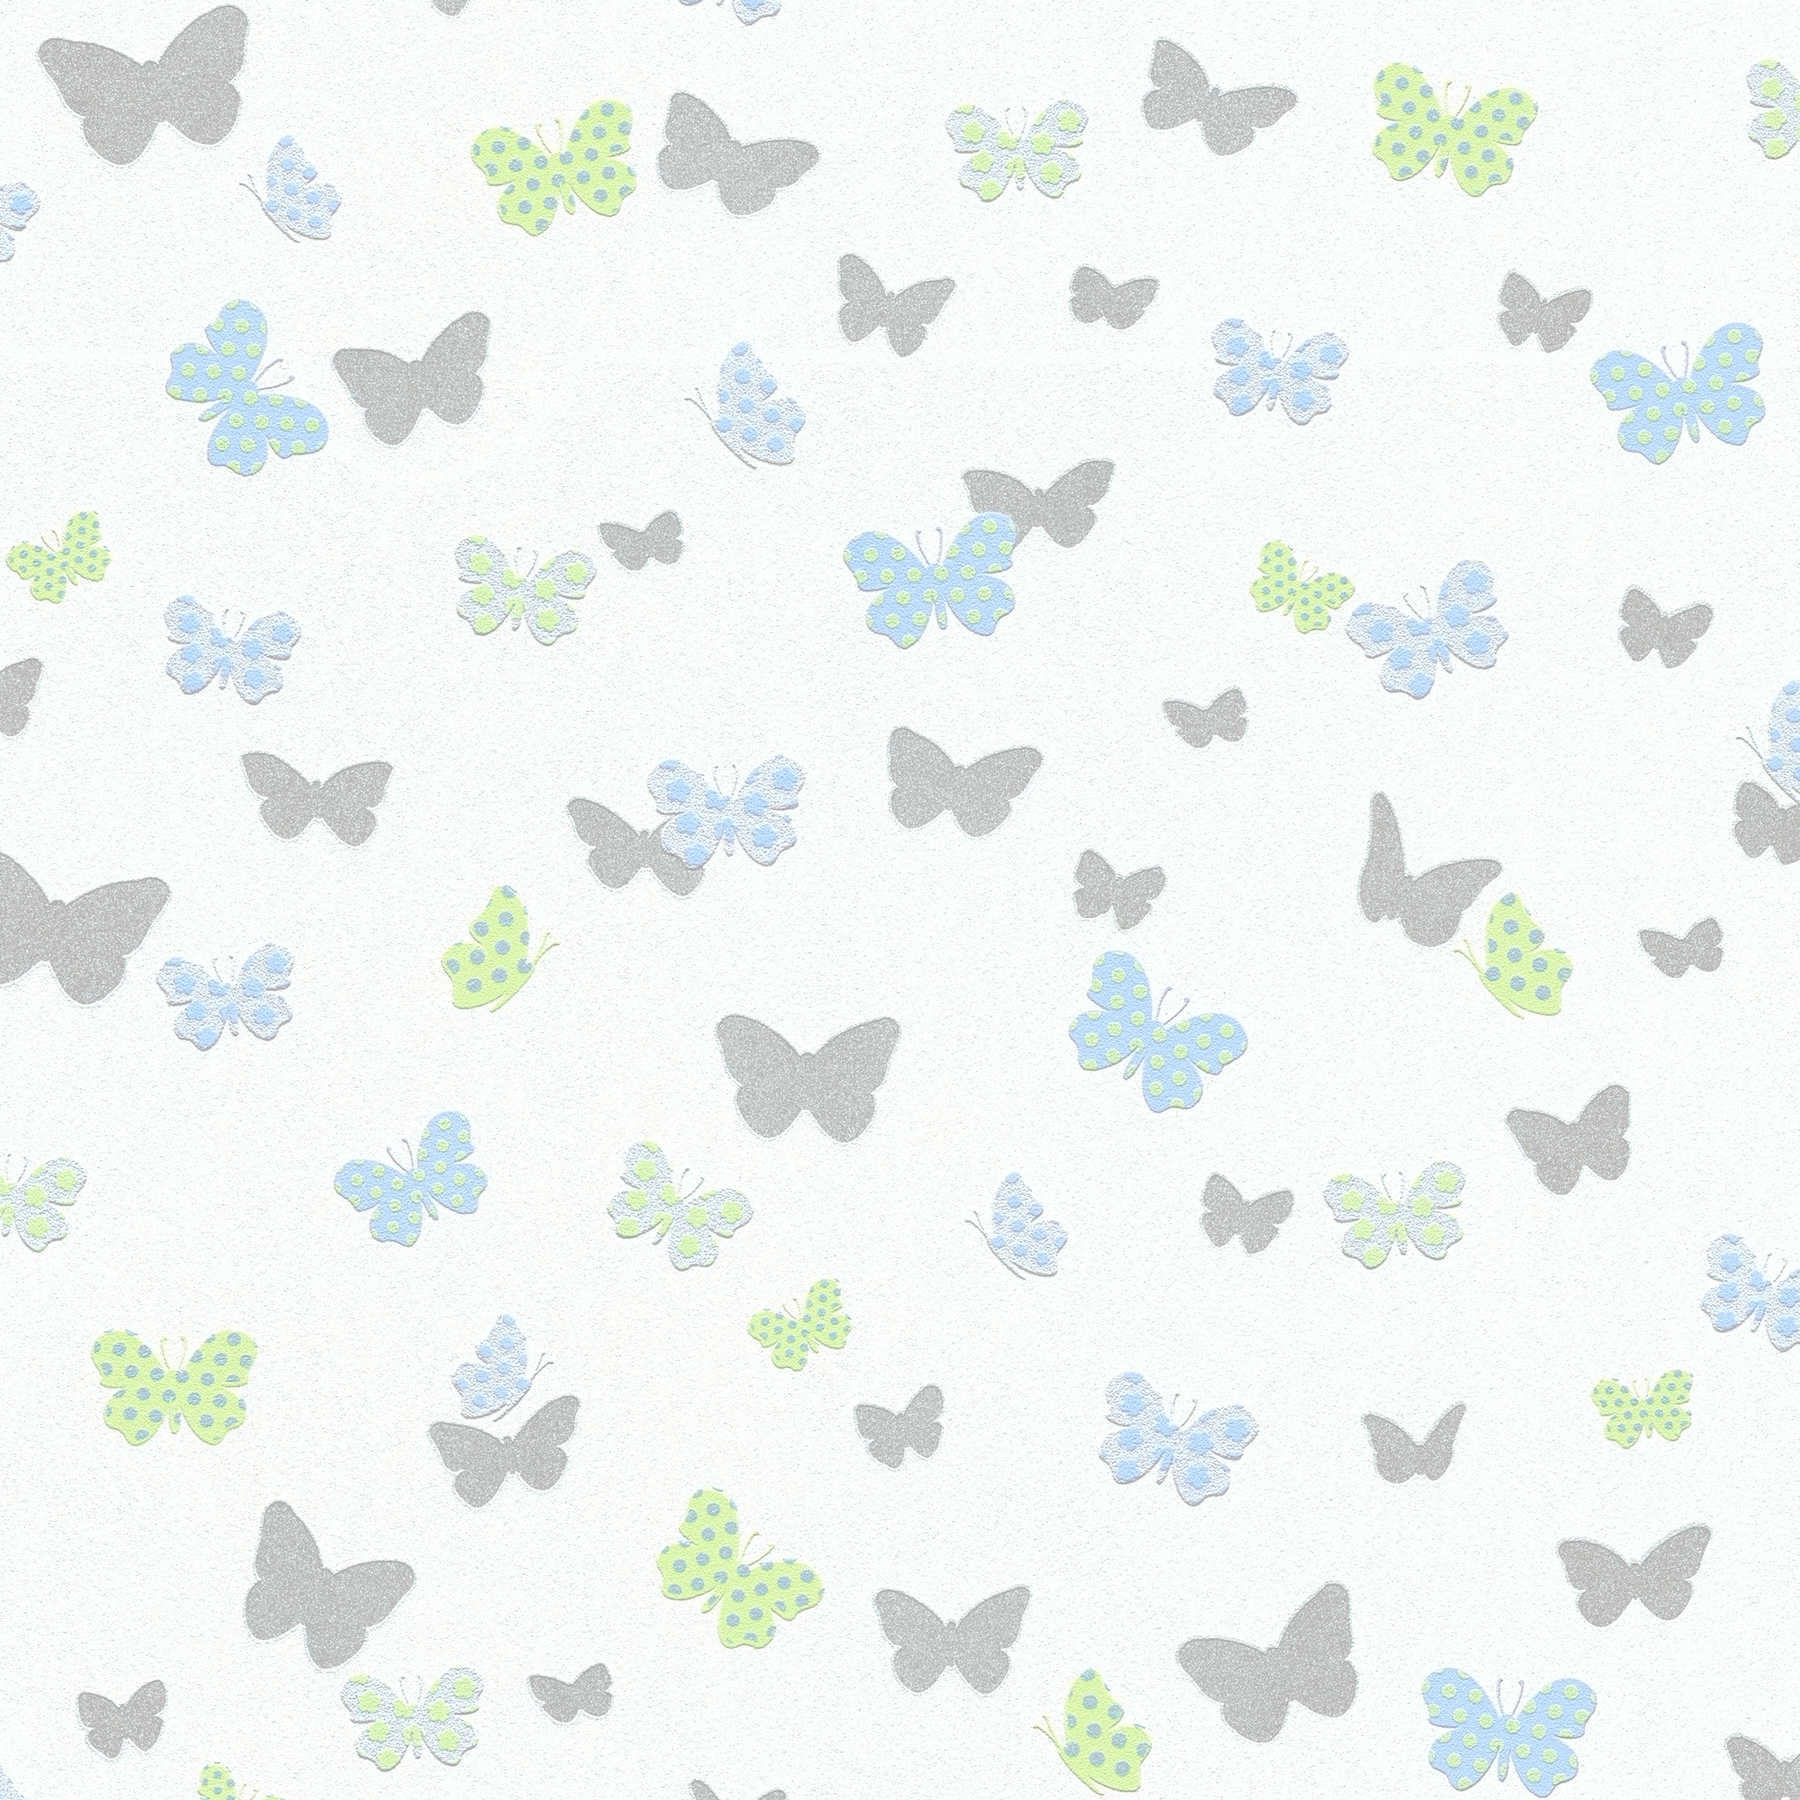 Vlinder behang kinderkamer voor jongens - wit, blauw, grijs
